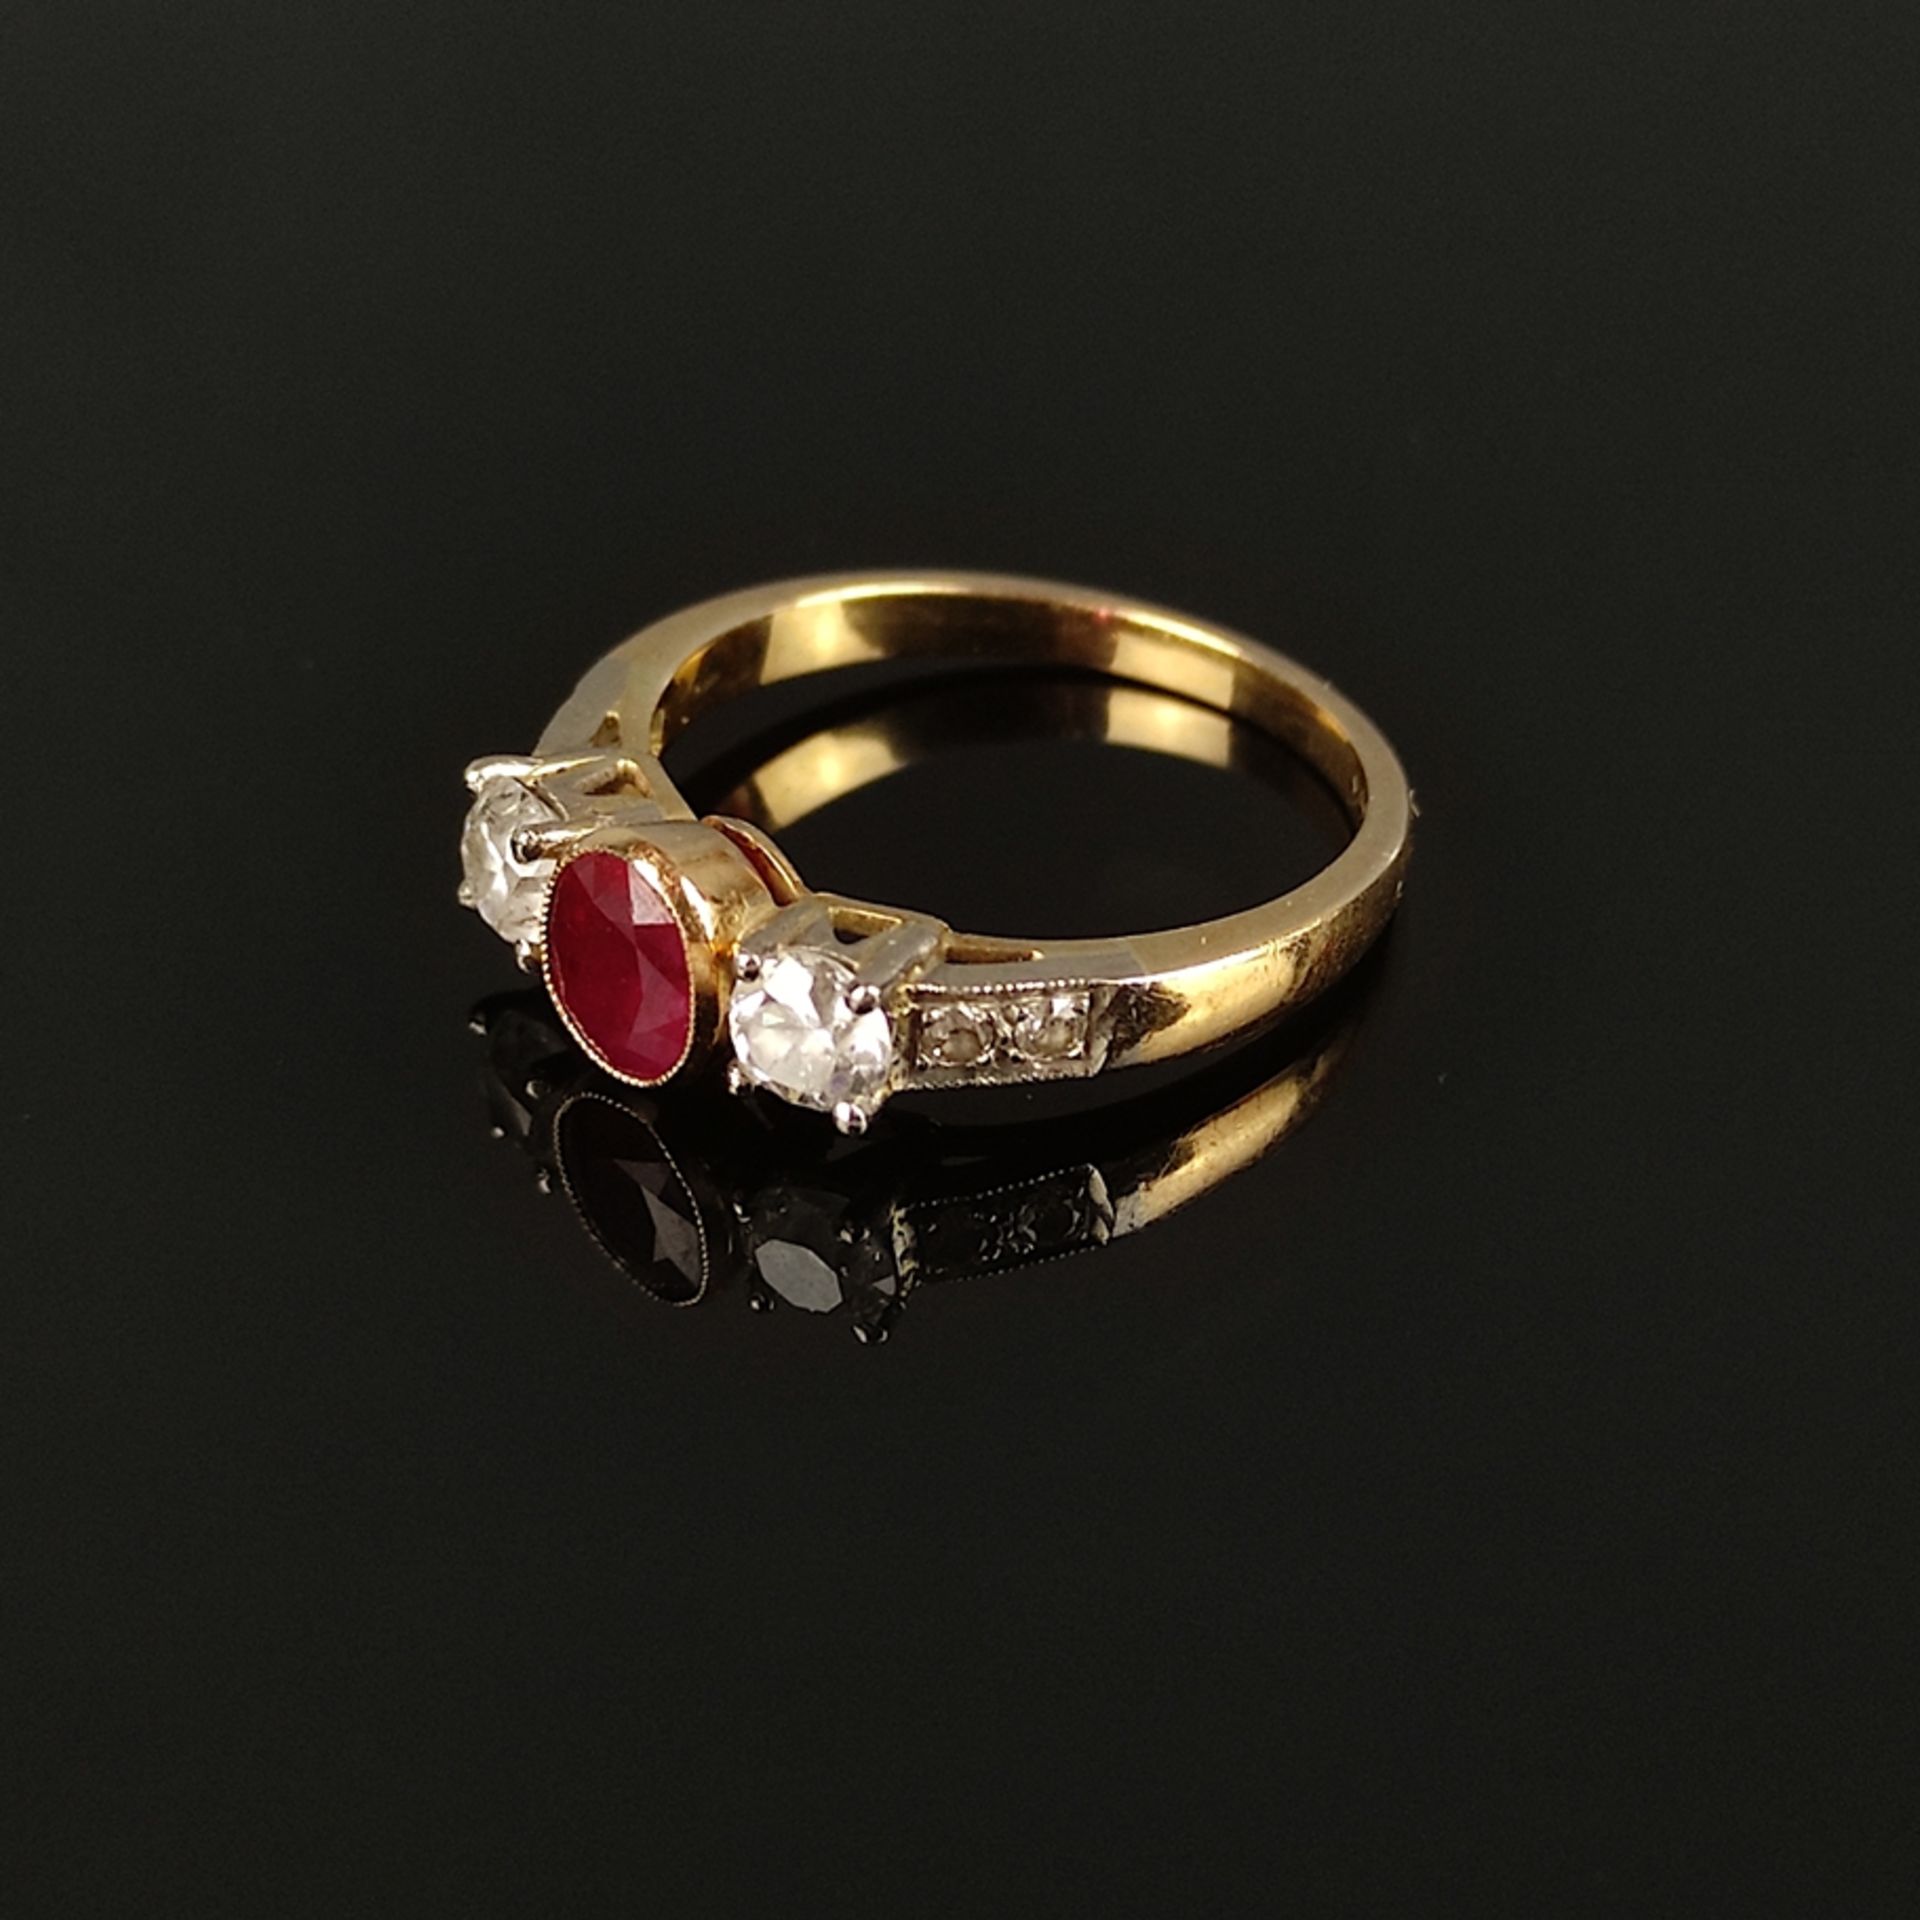 Rubin-Brillant-Ring, 750/18K Gelbgold (punziert), Gesamtgewicht 4g, mittig ovaler Rubin von 5,9x4,6